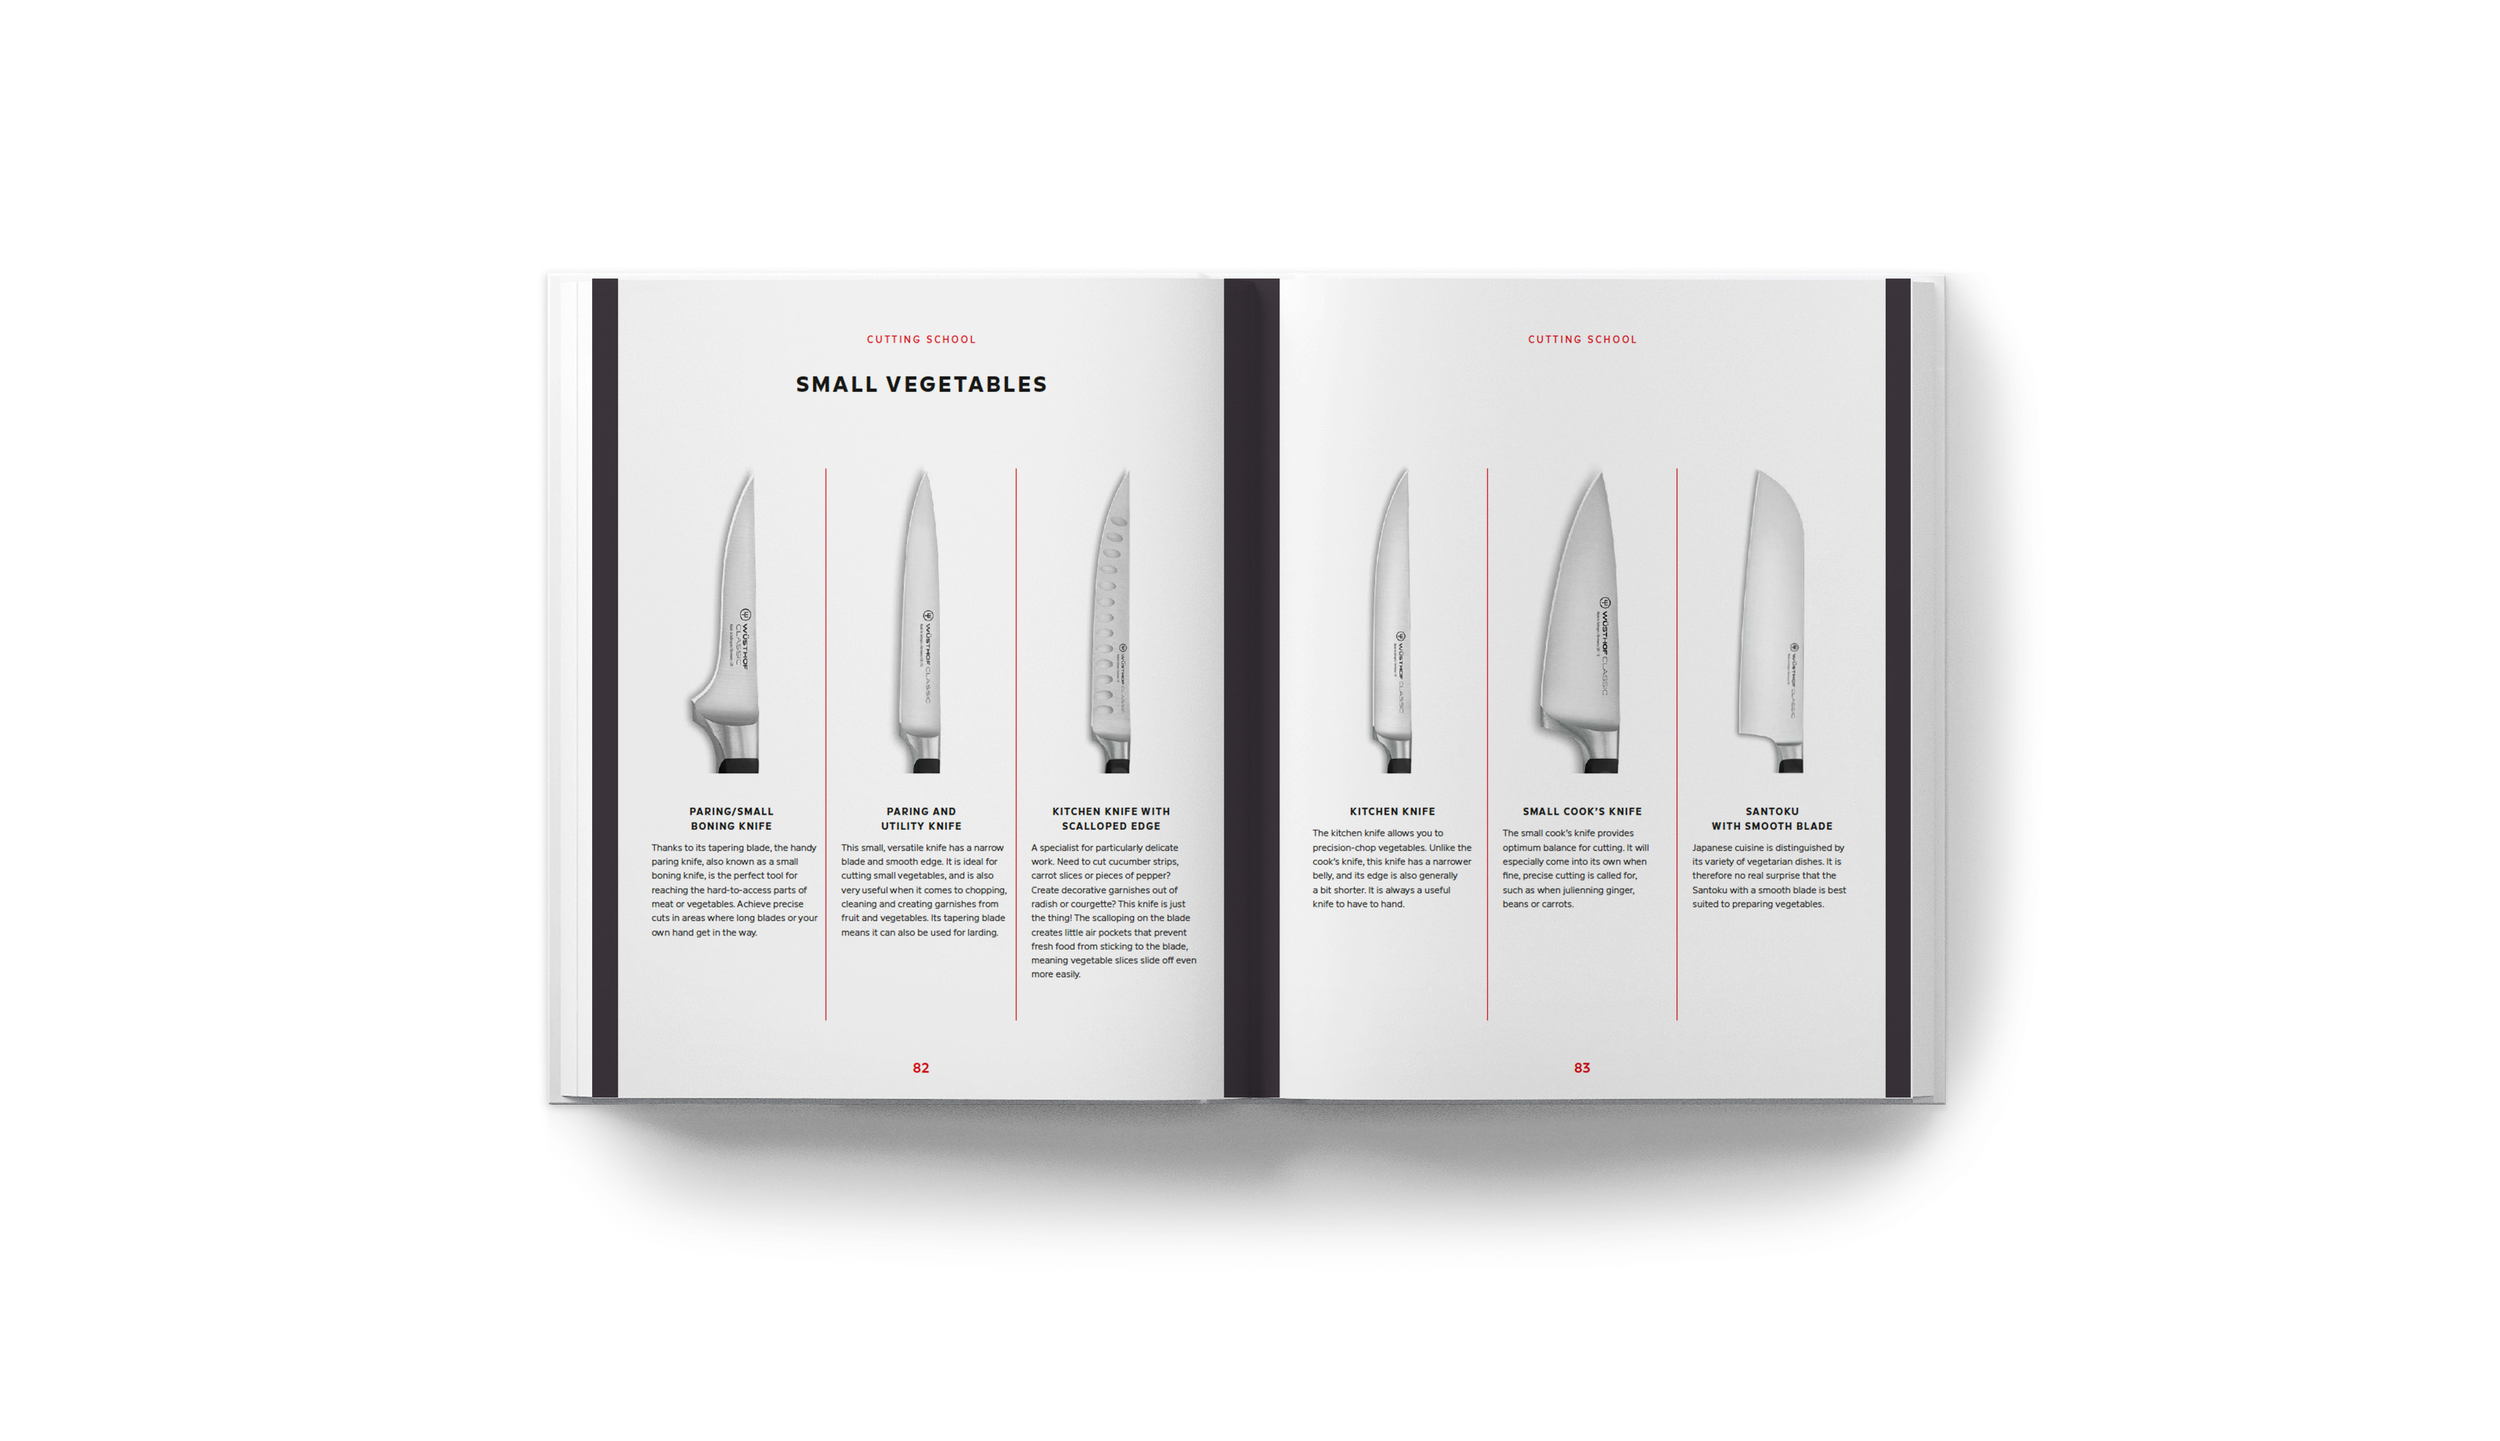 Carrot Knife/Radish Knife Sales, Carrot Knife/Radish Knife